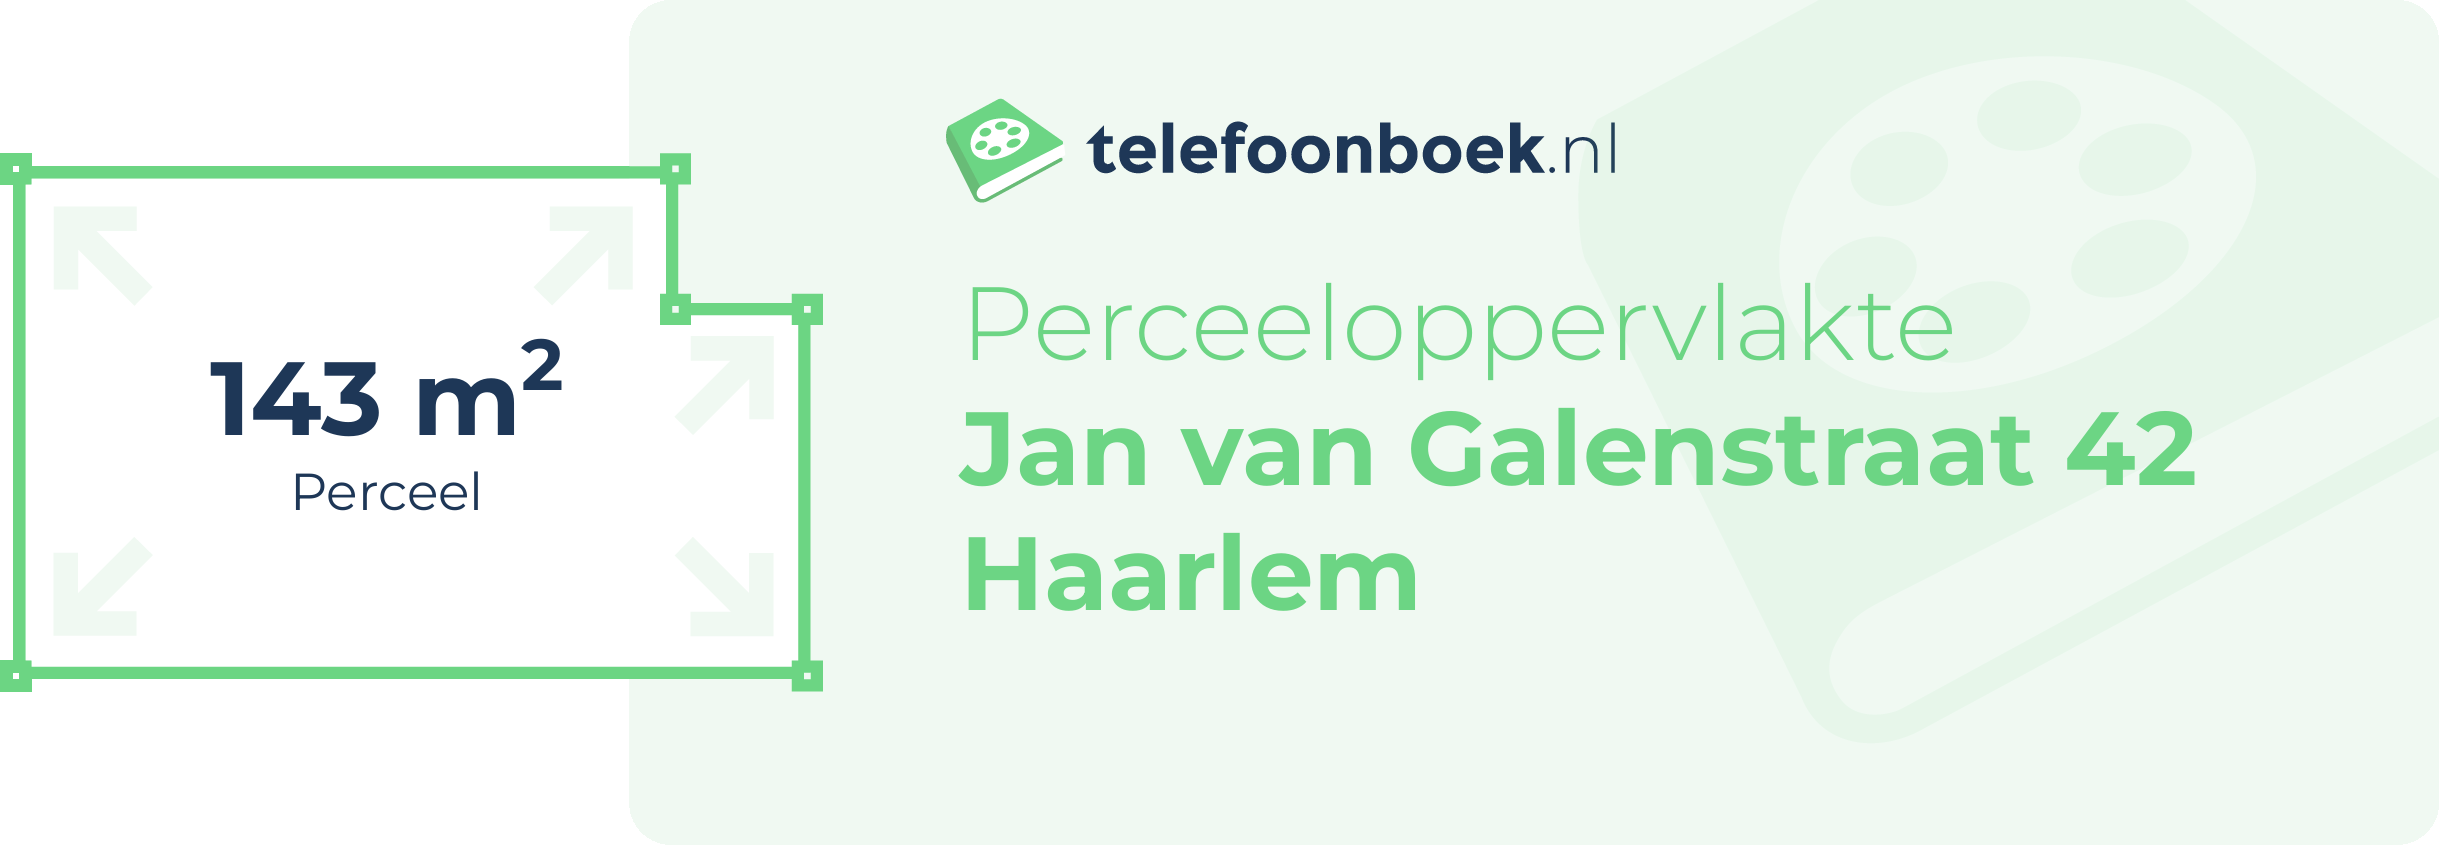 Perceeloppervlakte Jan Van Galenstraat 42 Haarlem